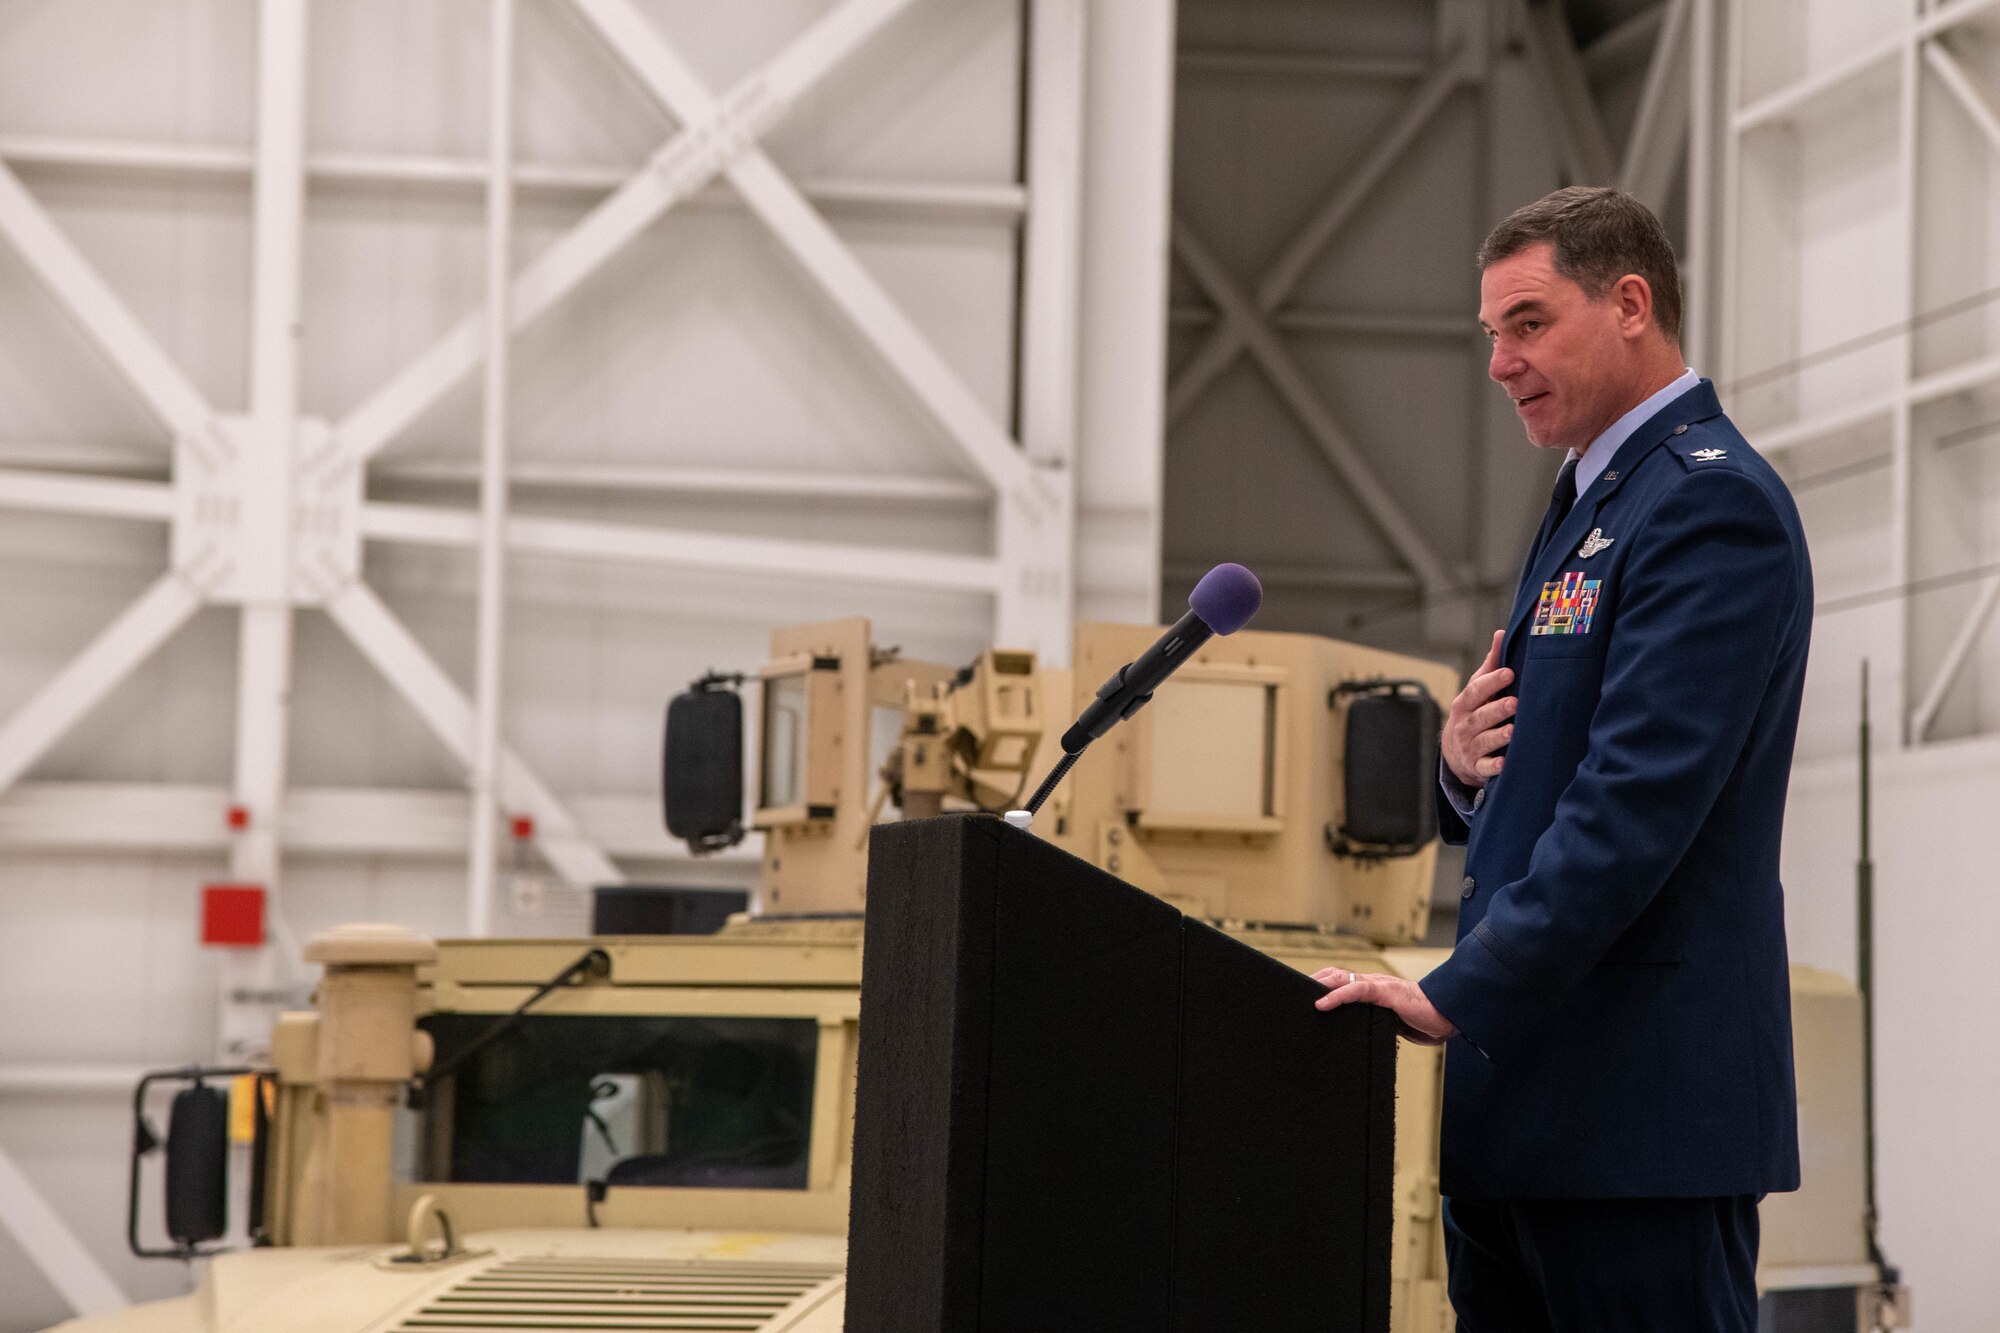 Man in Air Force uniform standing at a podium giving a speech in an aircraft hangar